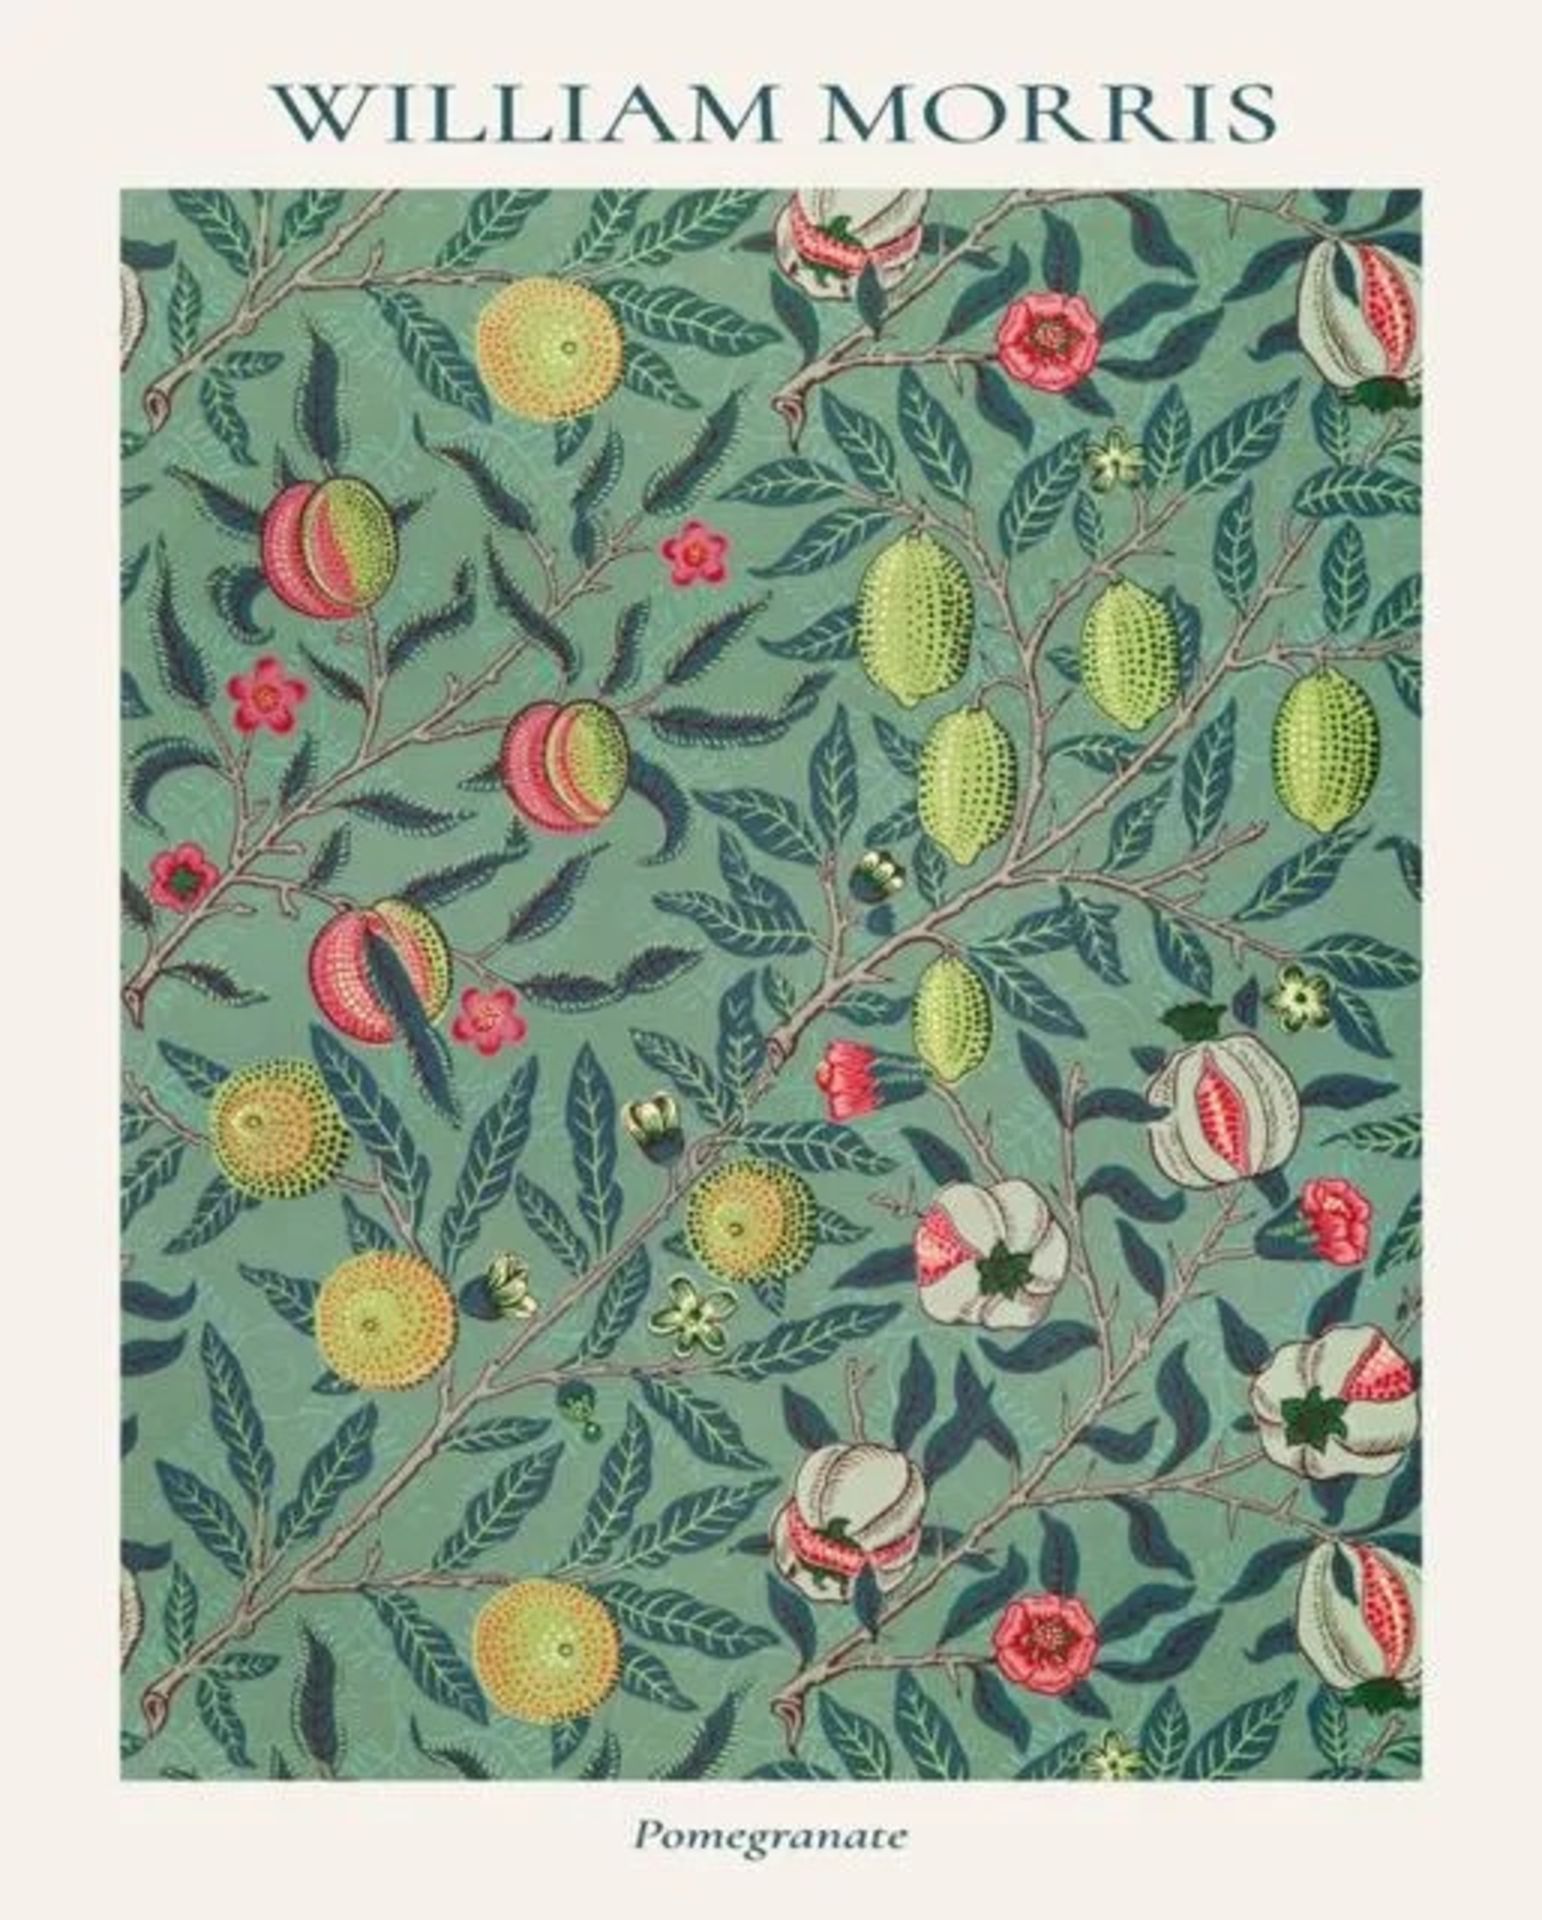 William Morris "Pomegranate" Print